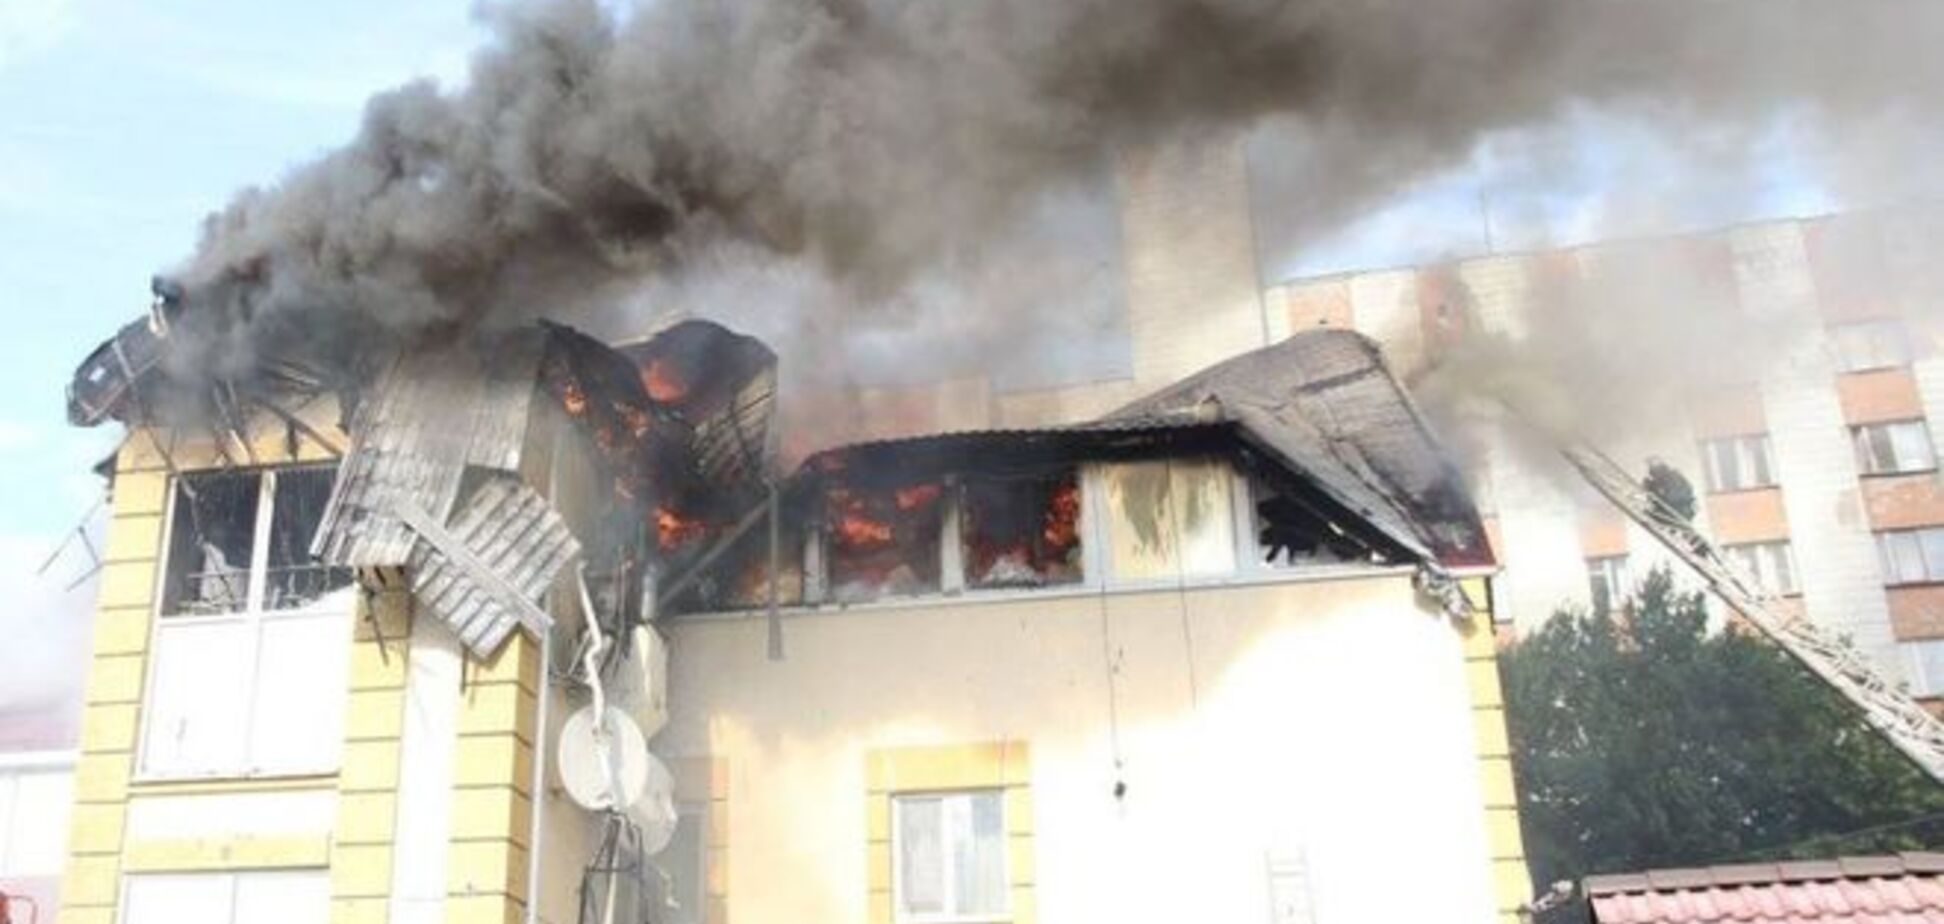 В Житомире горел развлекательный комплекс: опубликовано фото и видео